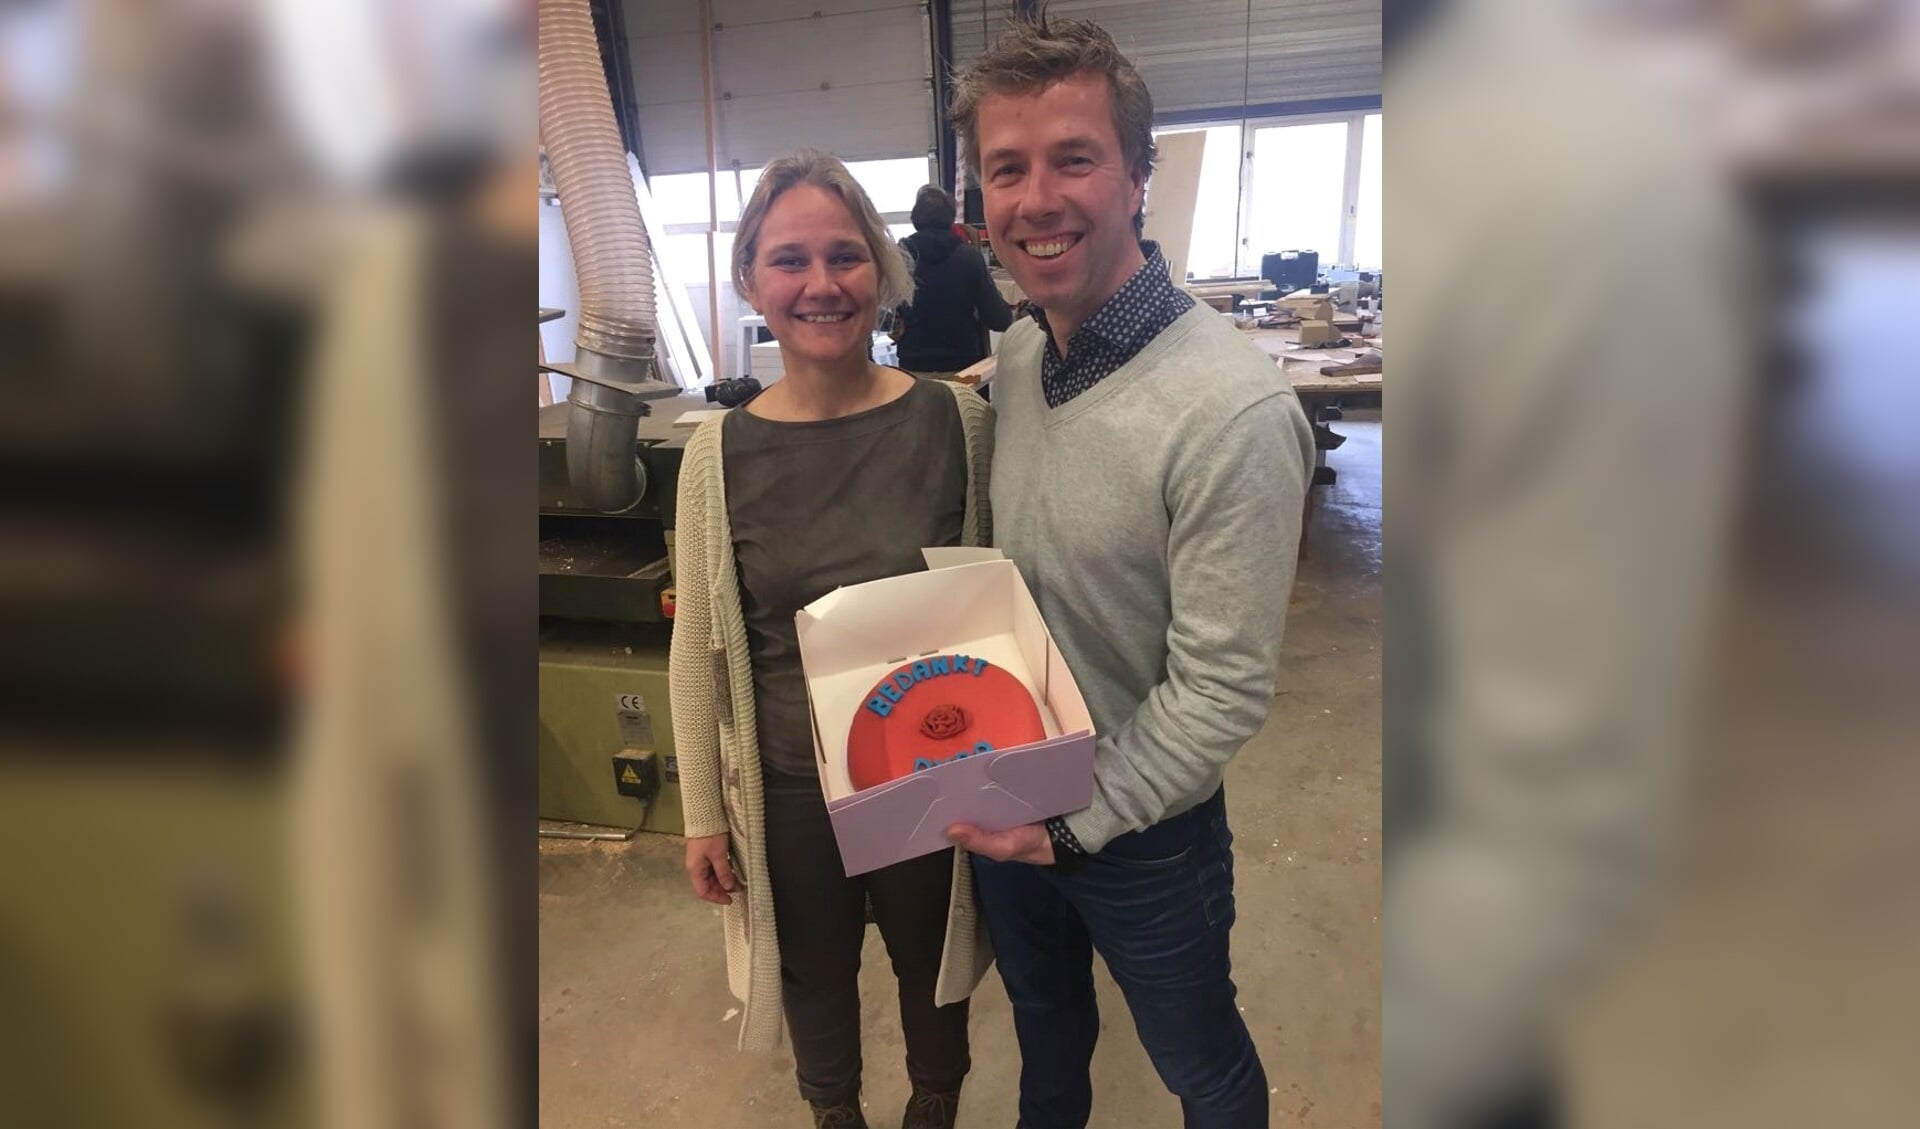 PvdA-wethouder Annelies de Jonge van Werk en
Inkomen overhandigt Jonathan de Lange van Kappert Bouw de rode taart. Foto: PR